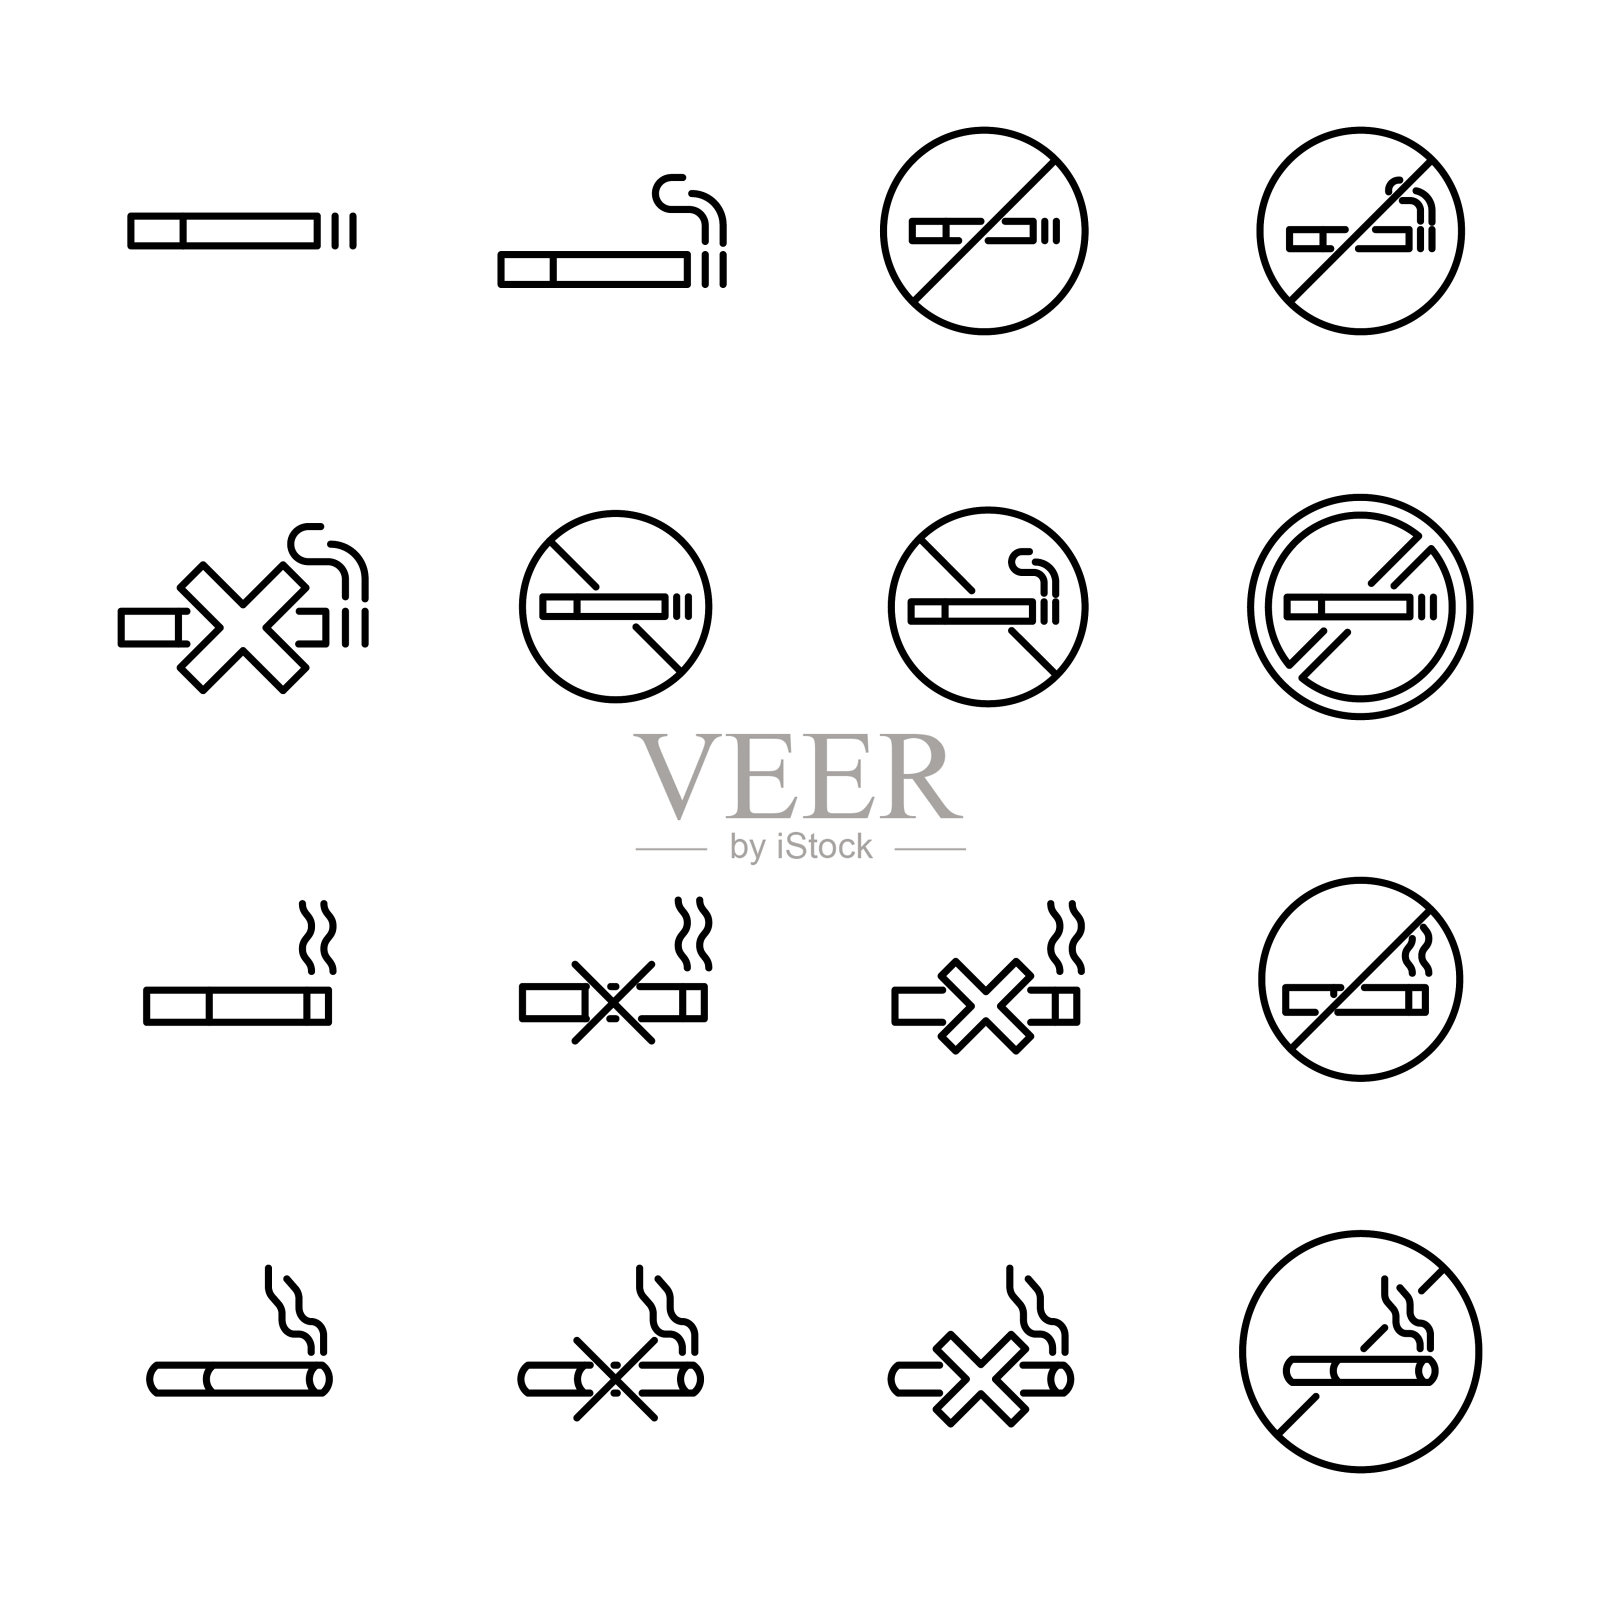 吸烟相关的线条图标的简单收集图标素材